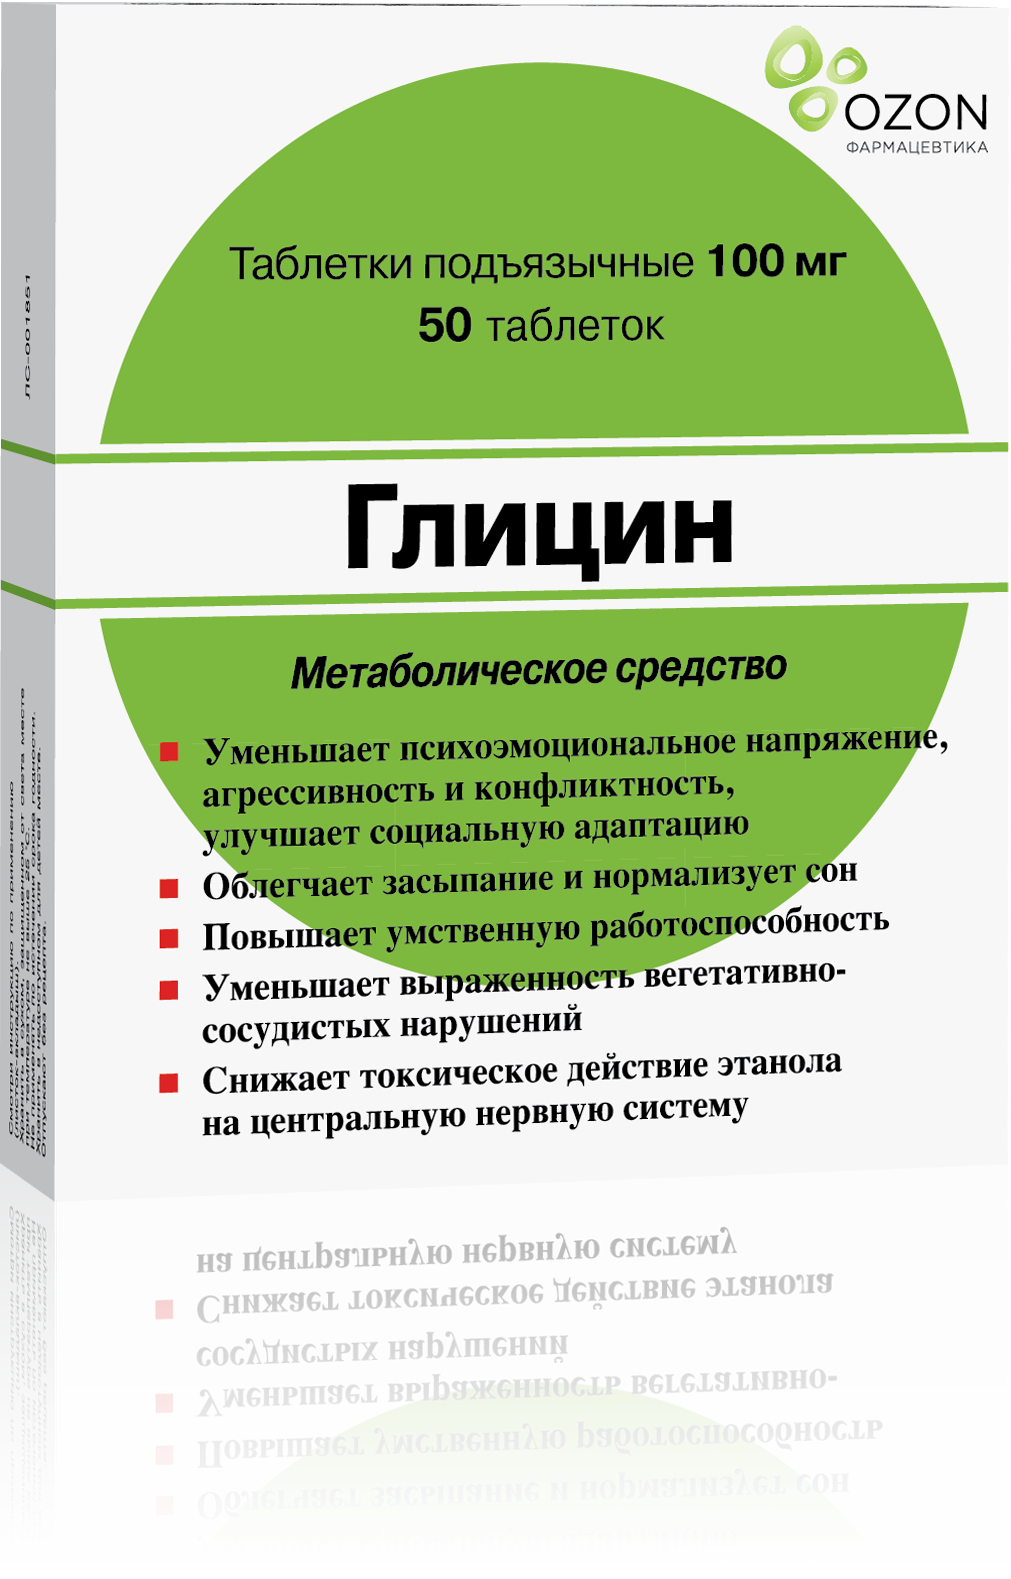 Глицин, таблетки подъязычные 100 мг (Озон), 50 шт.